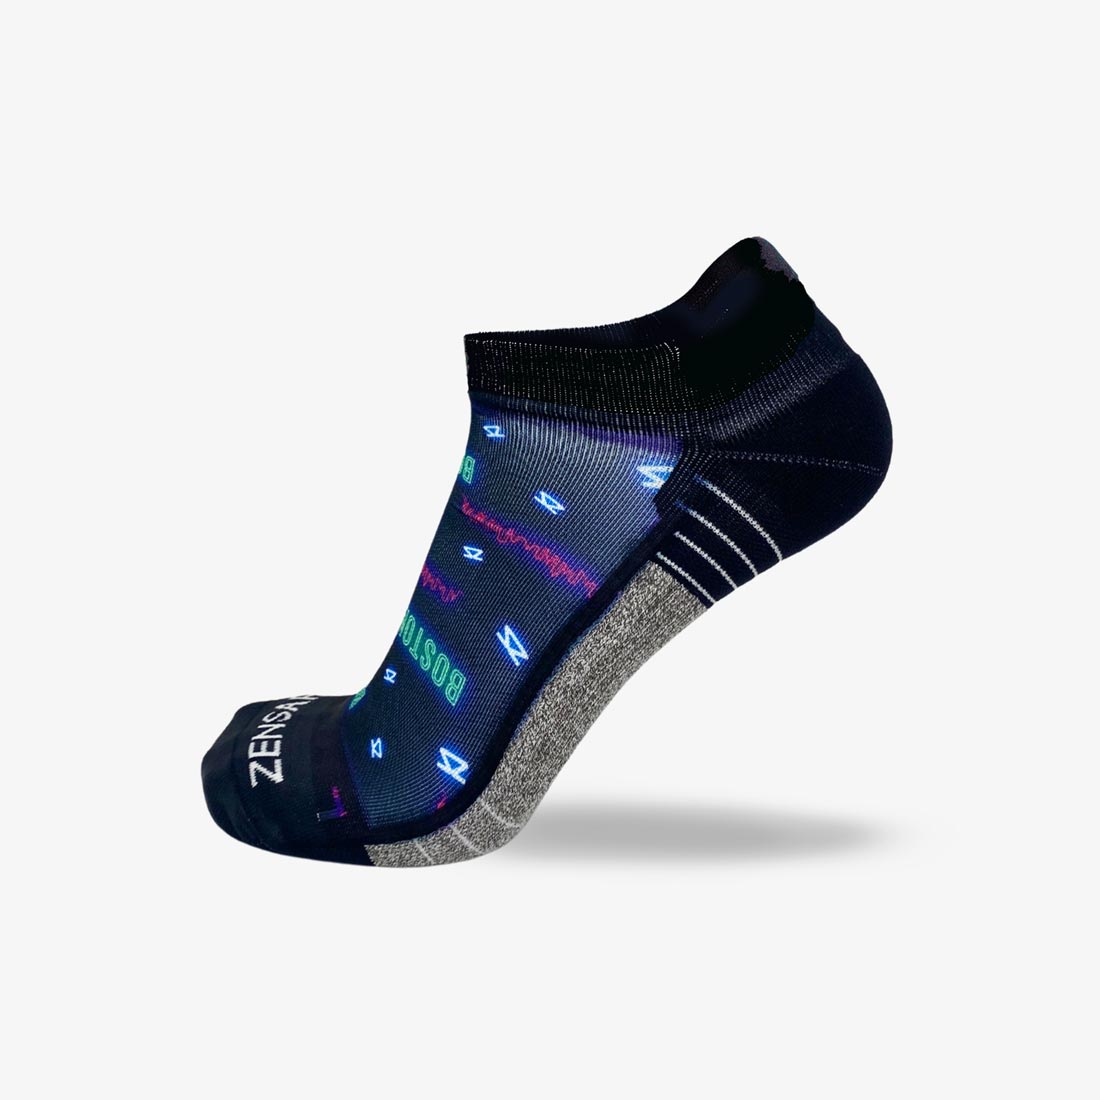 Neon Boston Running Socks (No Show)Socks - Zensah